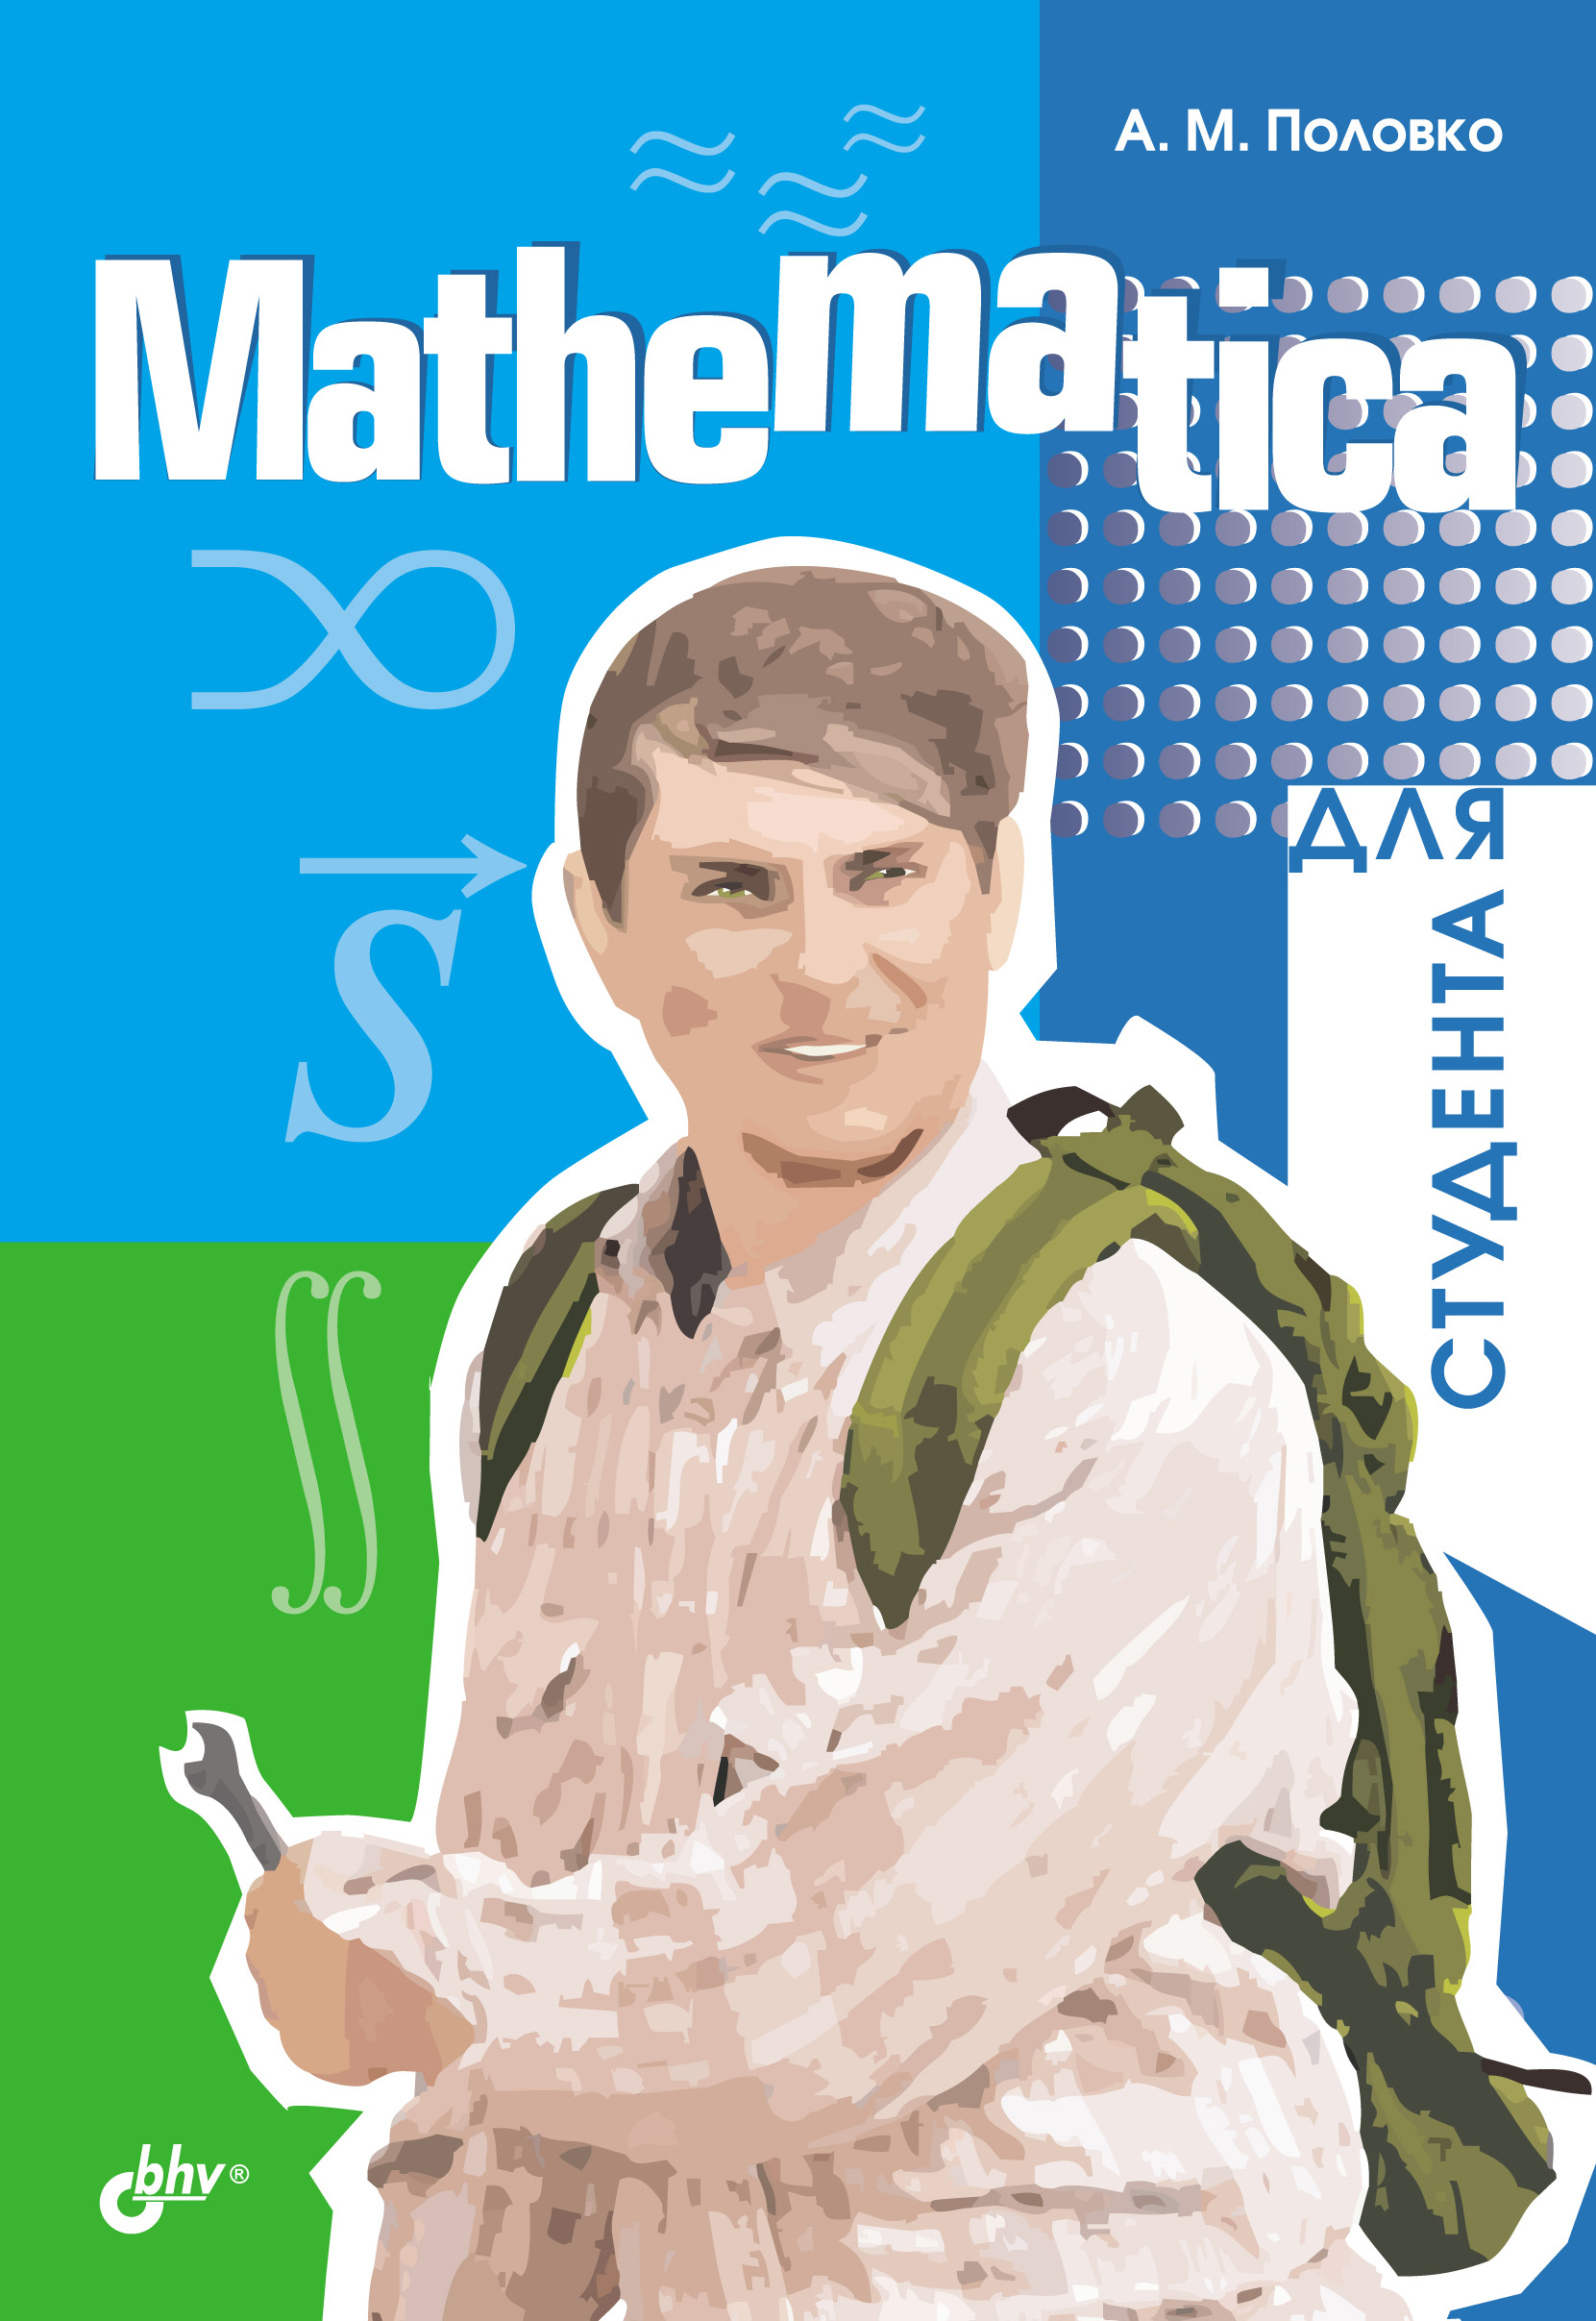 Книга  Mathematica для студента созданная А. М. Половко может относится к жанру математика, программы. Стоимость электронной книги Mathematica для студента с идентификатором 644705 составляет 199.00 руб.